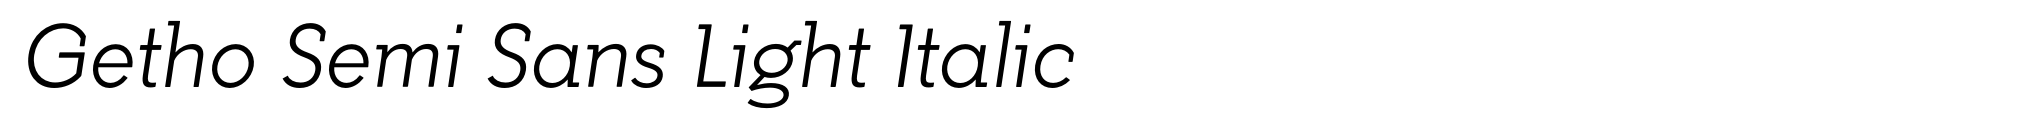 Getho Semi Sans Light Italic image